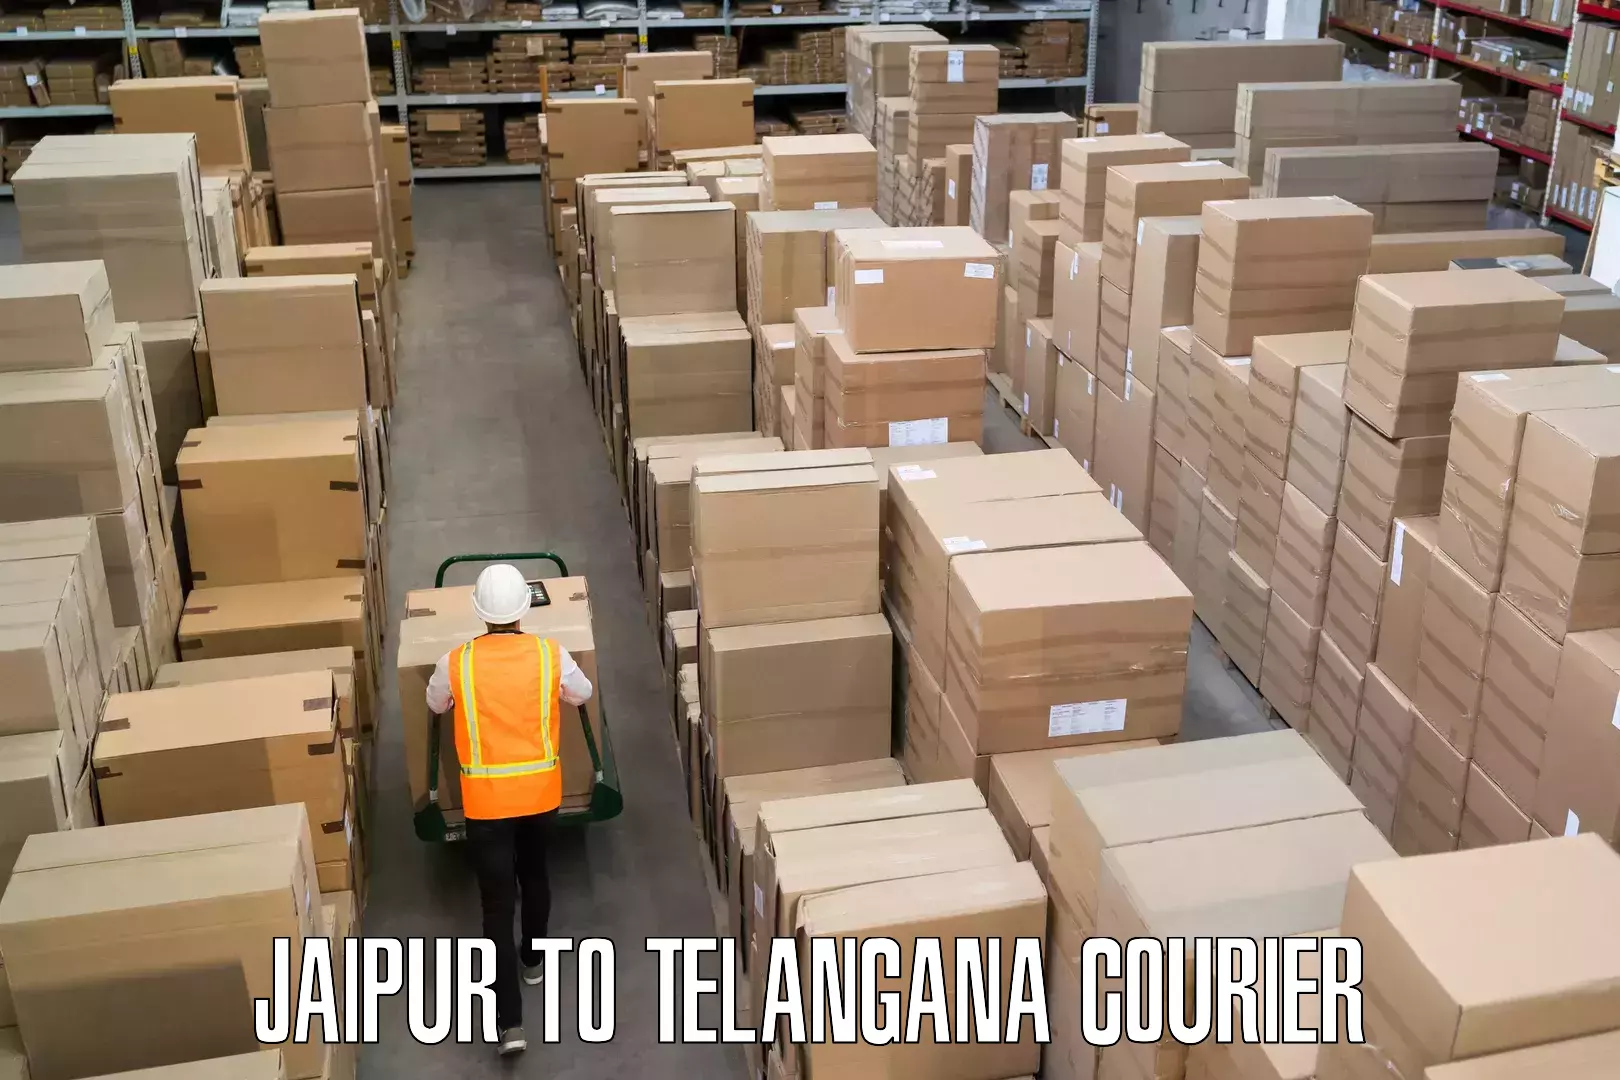 Luggage transport service Jaipur to Telangana